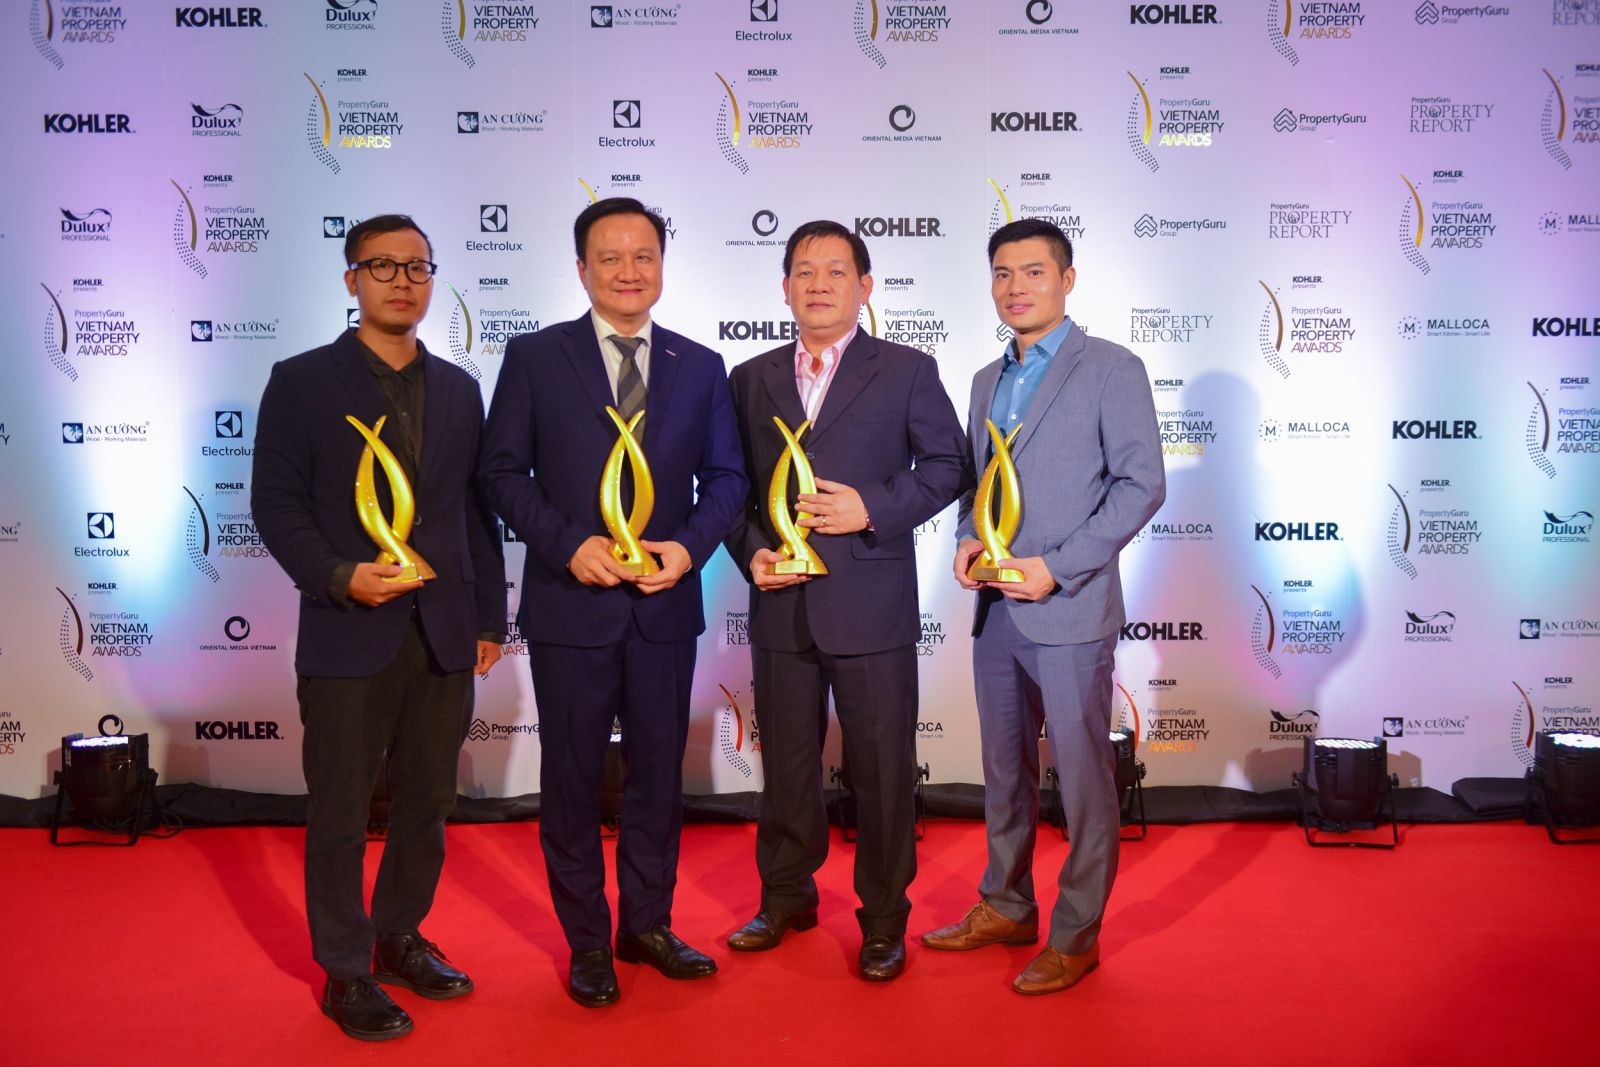 Ông Nguyễn Vĩnh Trân (thứ hai từ bên trái), Chủ tịch kiêm Tổng Giám đốc Tập đoàn MIK Group, và các đồng nghệp trong buổi lễ trao giải thưởng Property Guru Vietnam Property Award